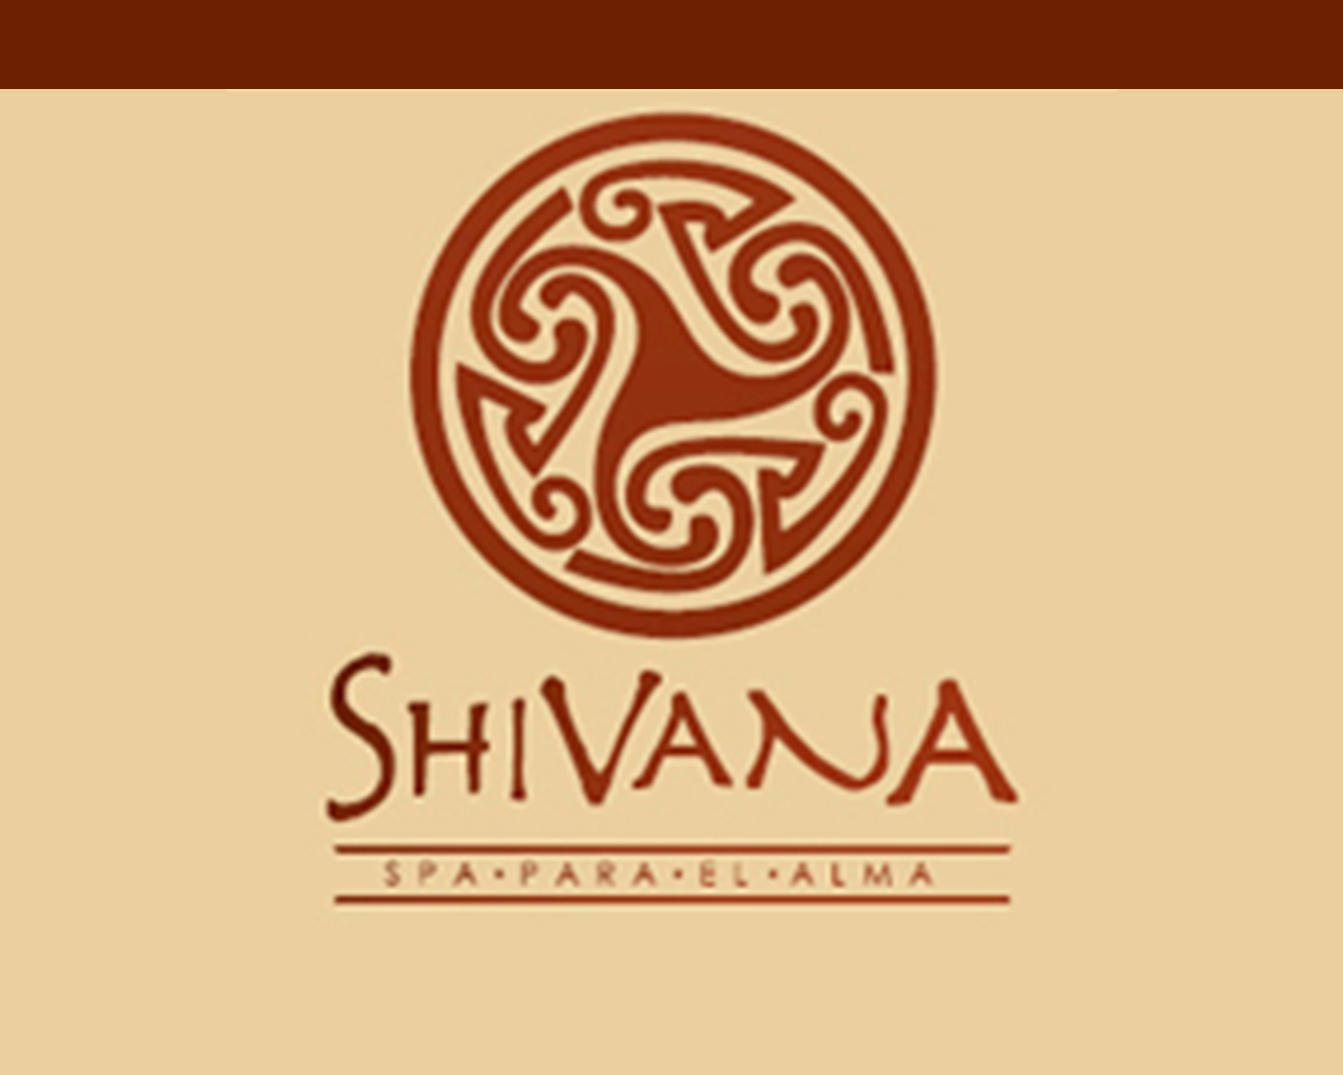 Shivana